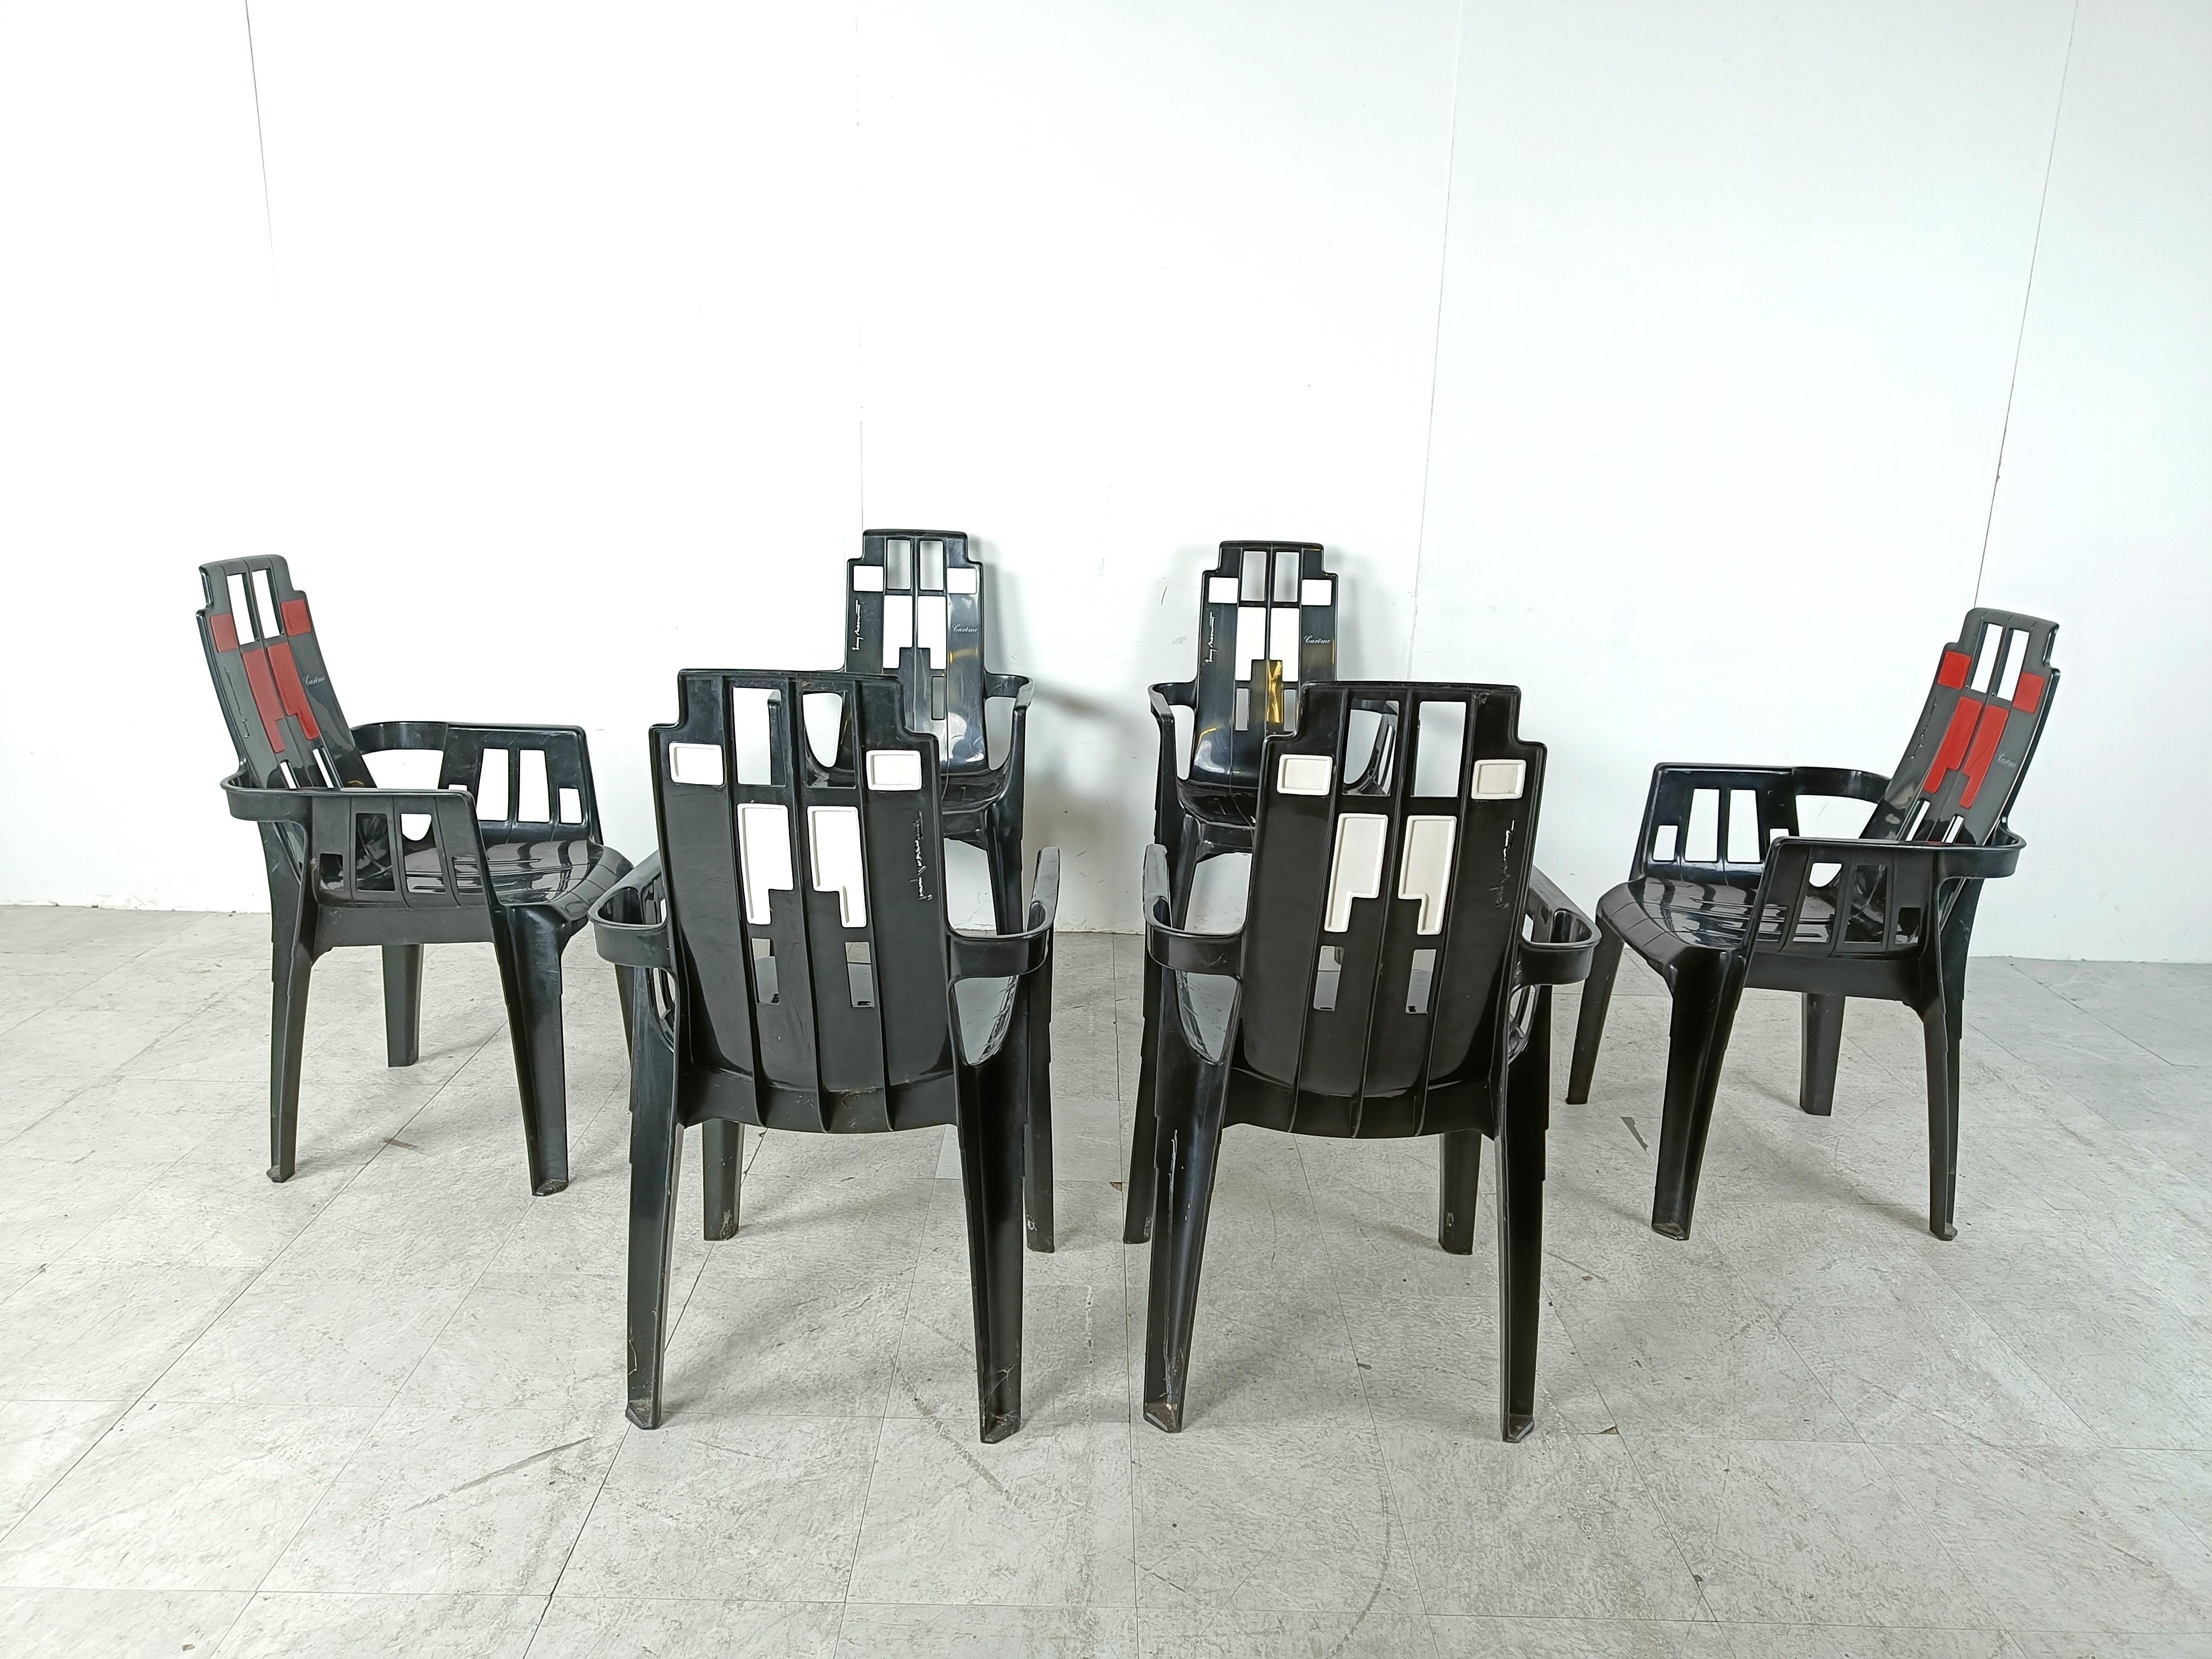 Set aus 6 stapelbaren Boston-Esszimmerstühlen von Pierre Paulin, inspiriert von Piet Mondriaan und Charles Rennie Mackintosh.

Diese Esszimmerstühle können im Innen- und Außenbereich verwendet werden und haben ein zeitloses Design

1980er Jahre -